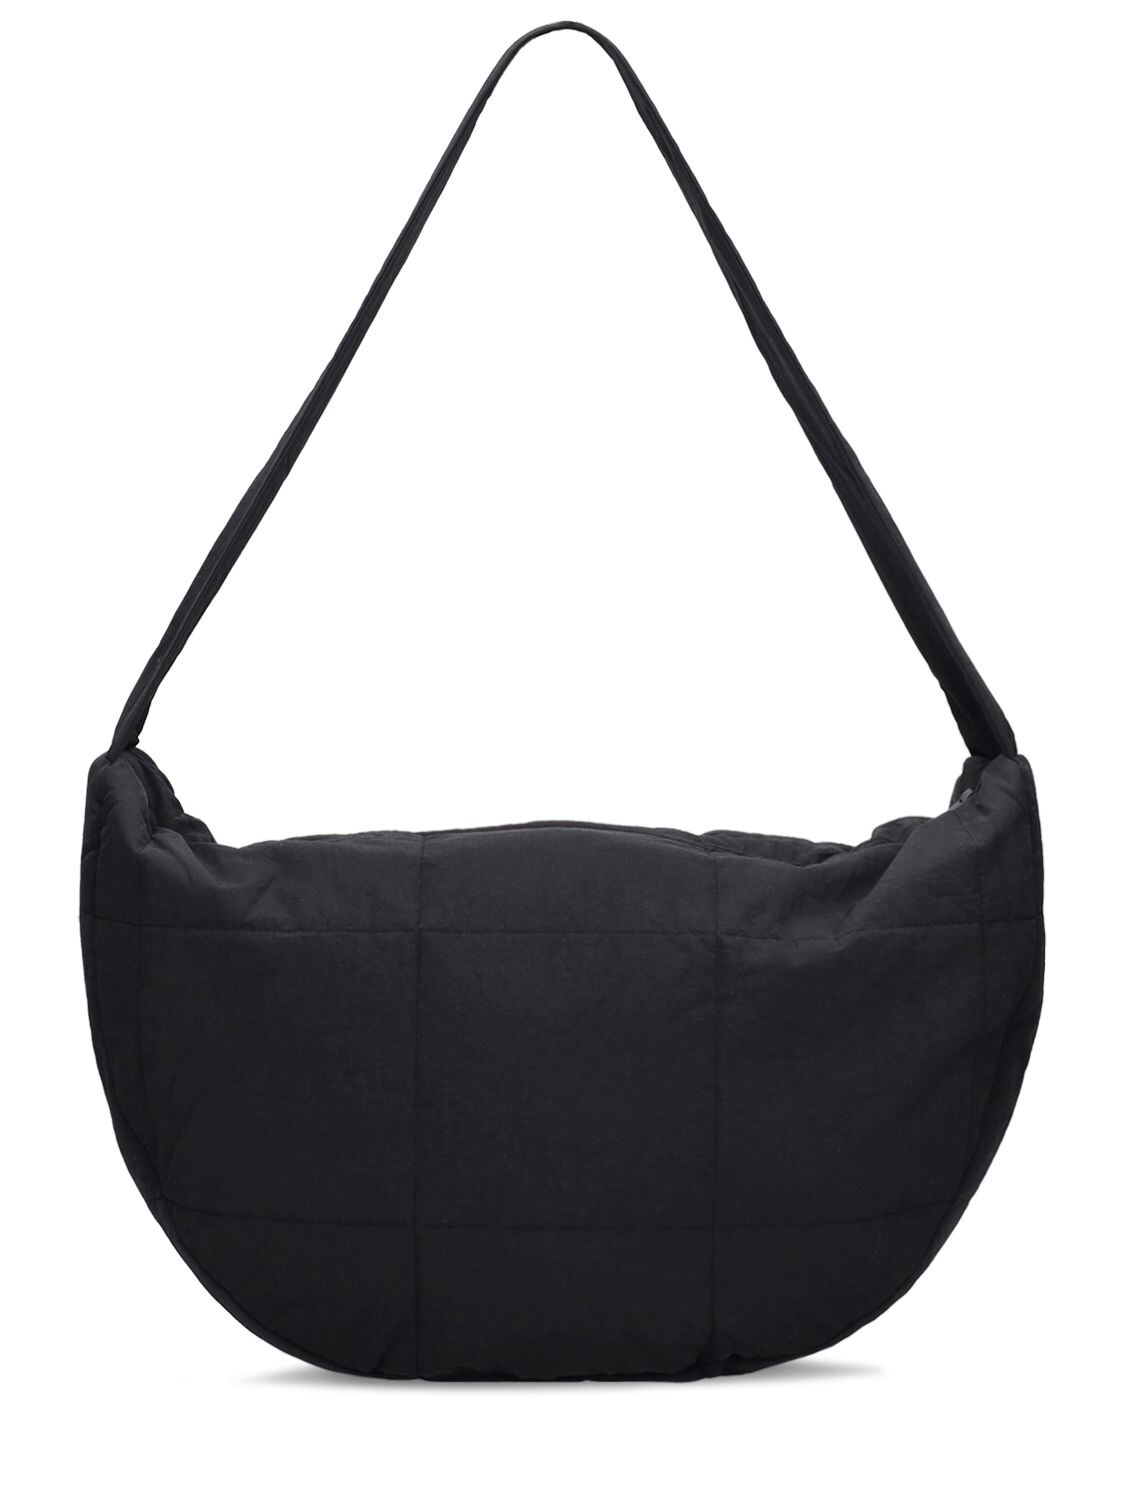 St. Agni 90s Shoulder Bag - Black